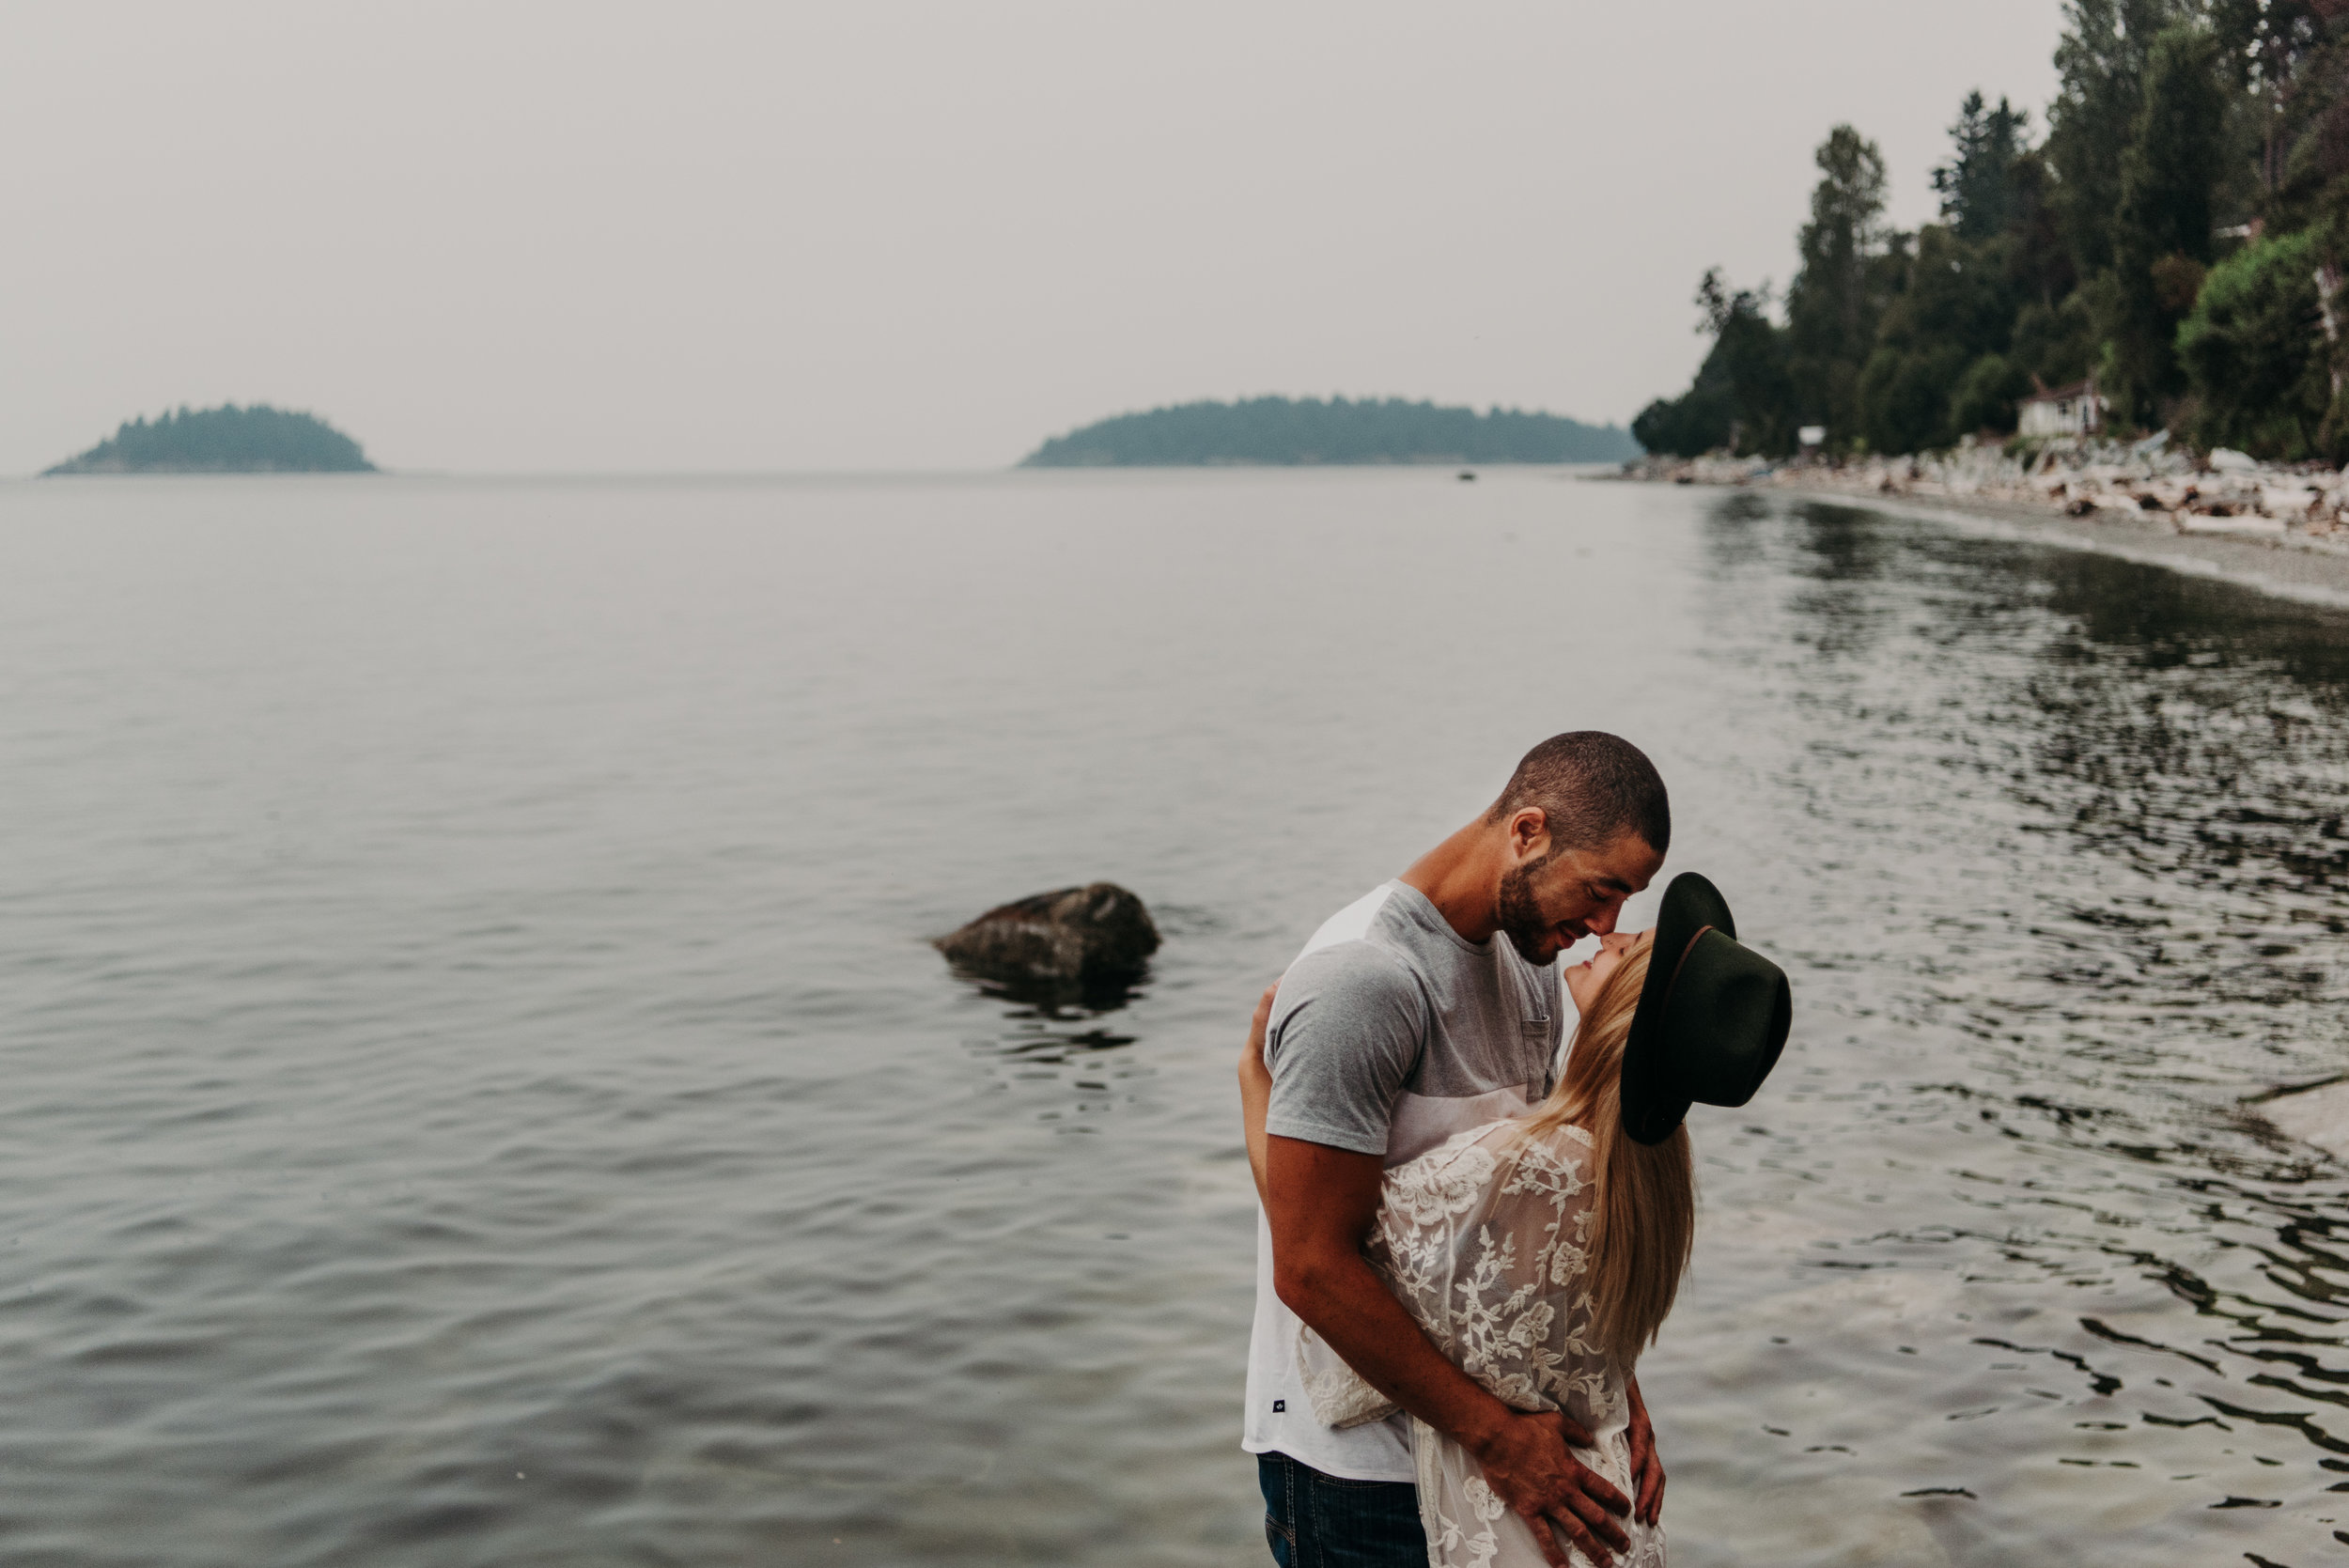 Sierra & Tyler Summer Beach Couples Session - Laura Olson Photography - Sunshine Coast BC Photographer-2421.jpg